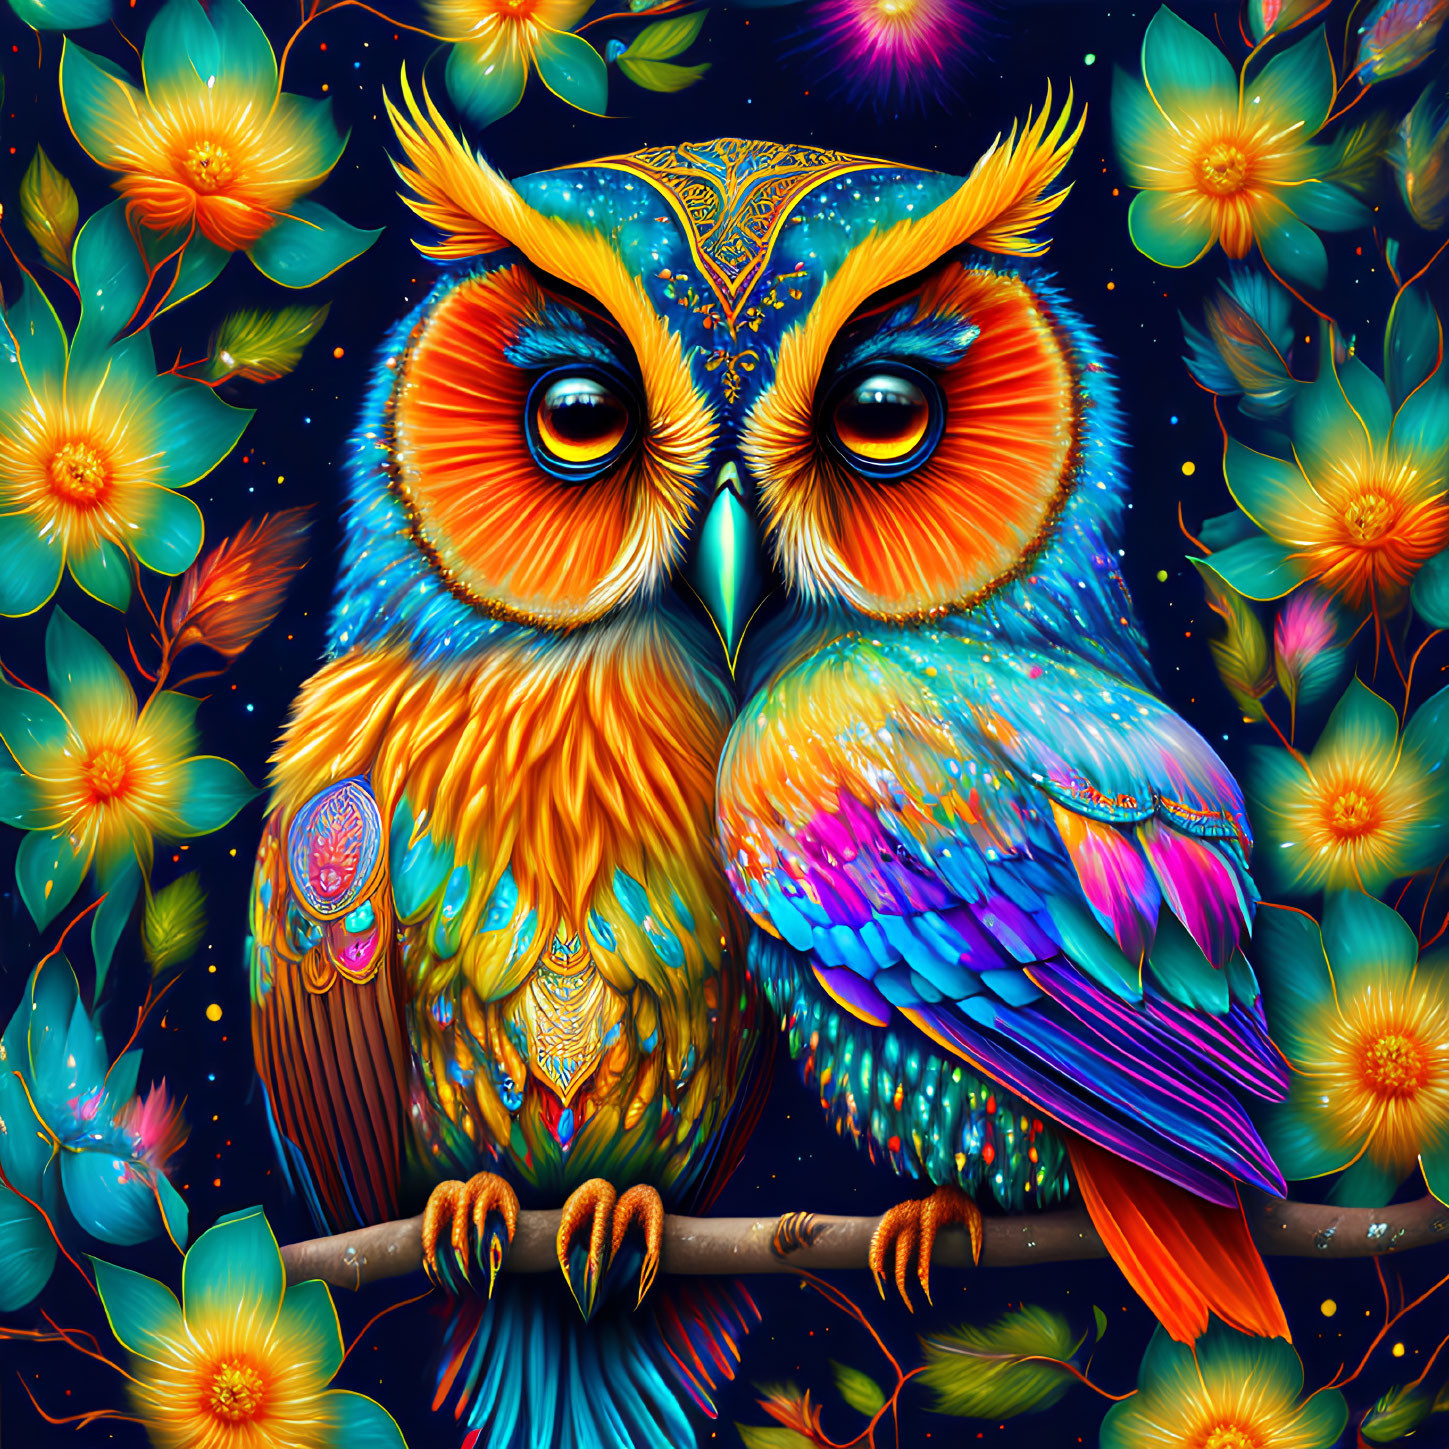 Owl of Wisdom